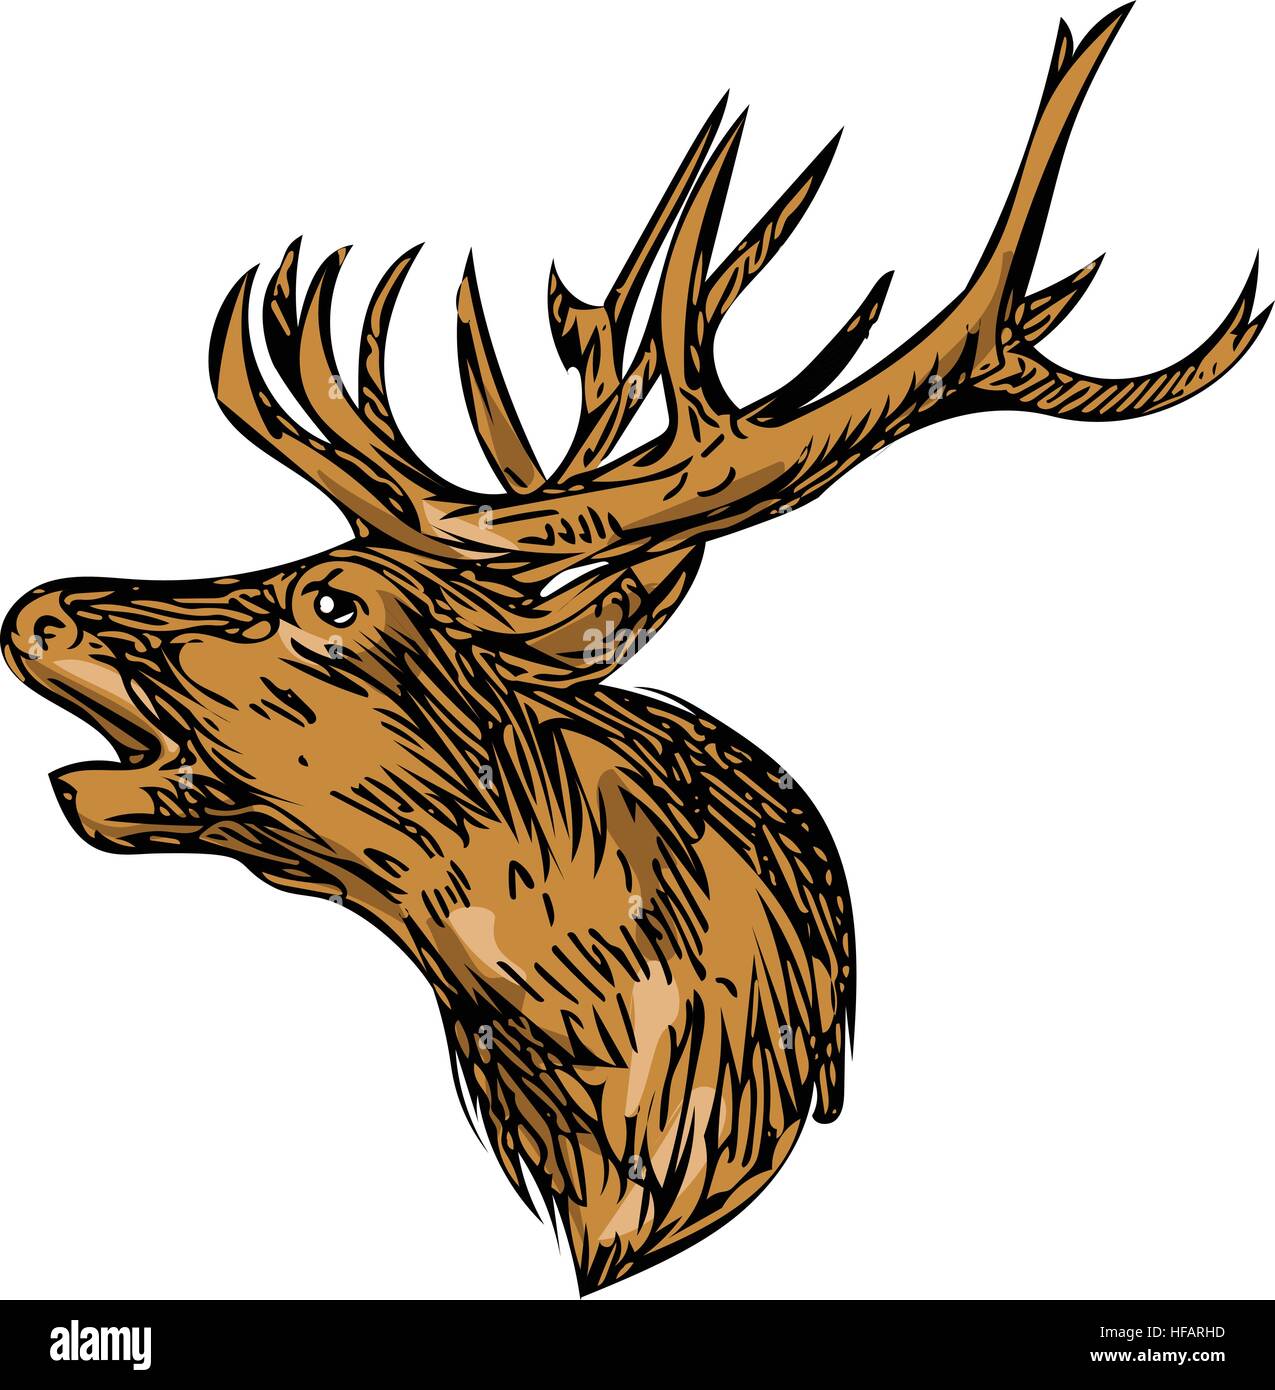 Disegno stile sketch illustrazione di un cervo rosso cervo testa buck ruggente affacciato lato impostato su isolato sullo sfondo bianco. Illustrazione Vettoriale